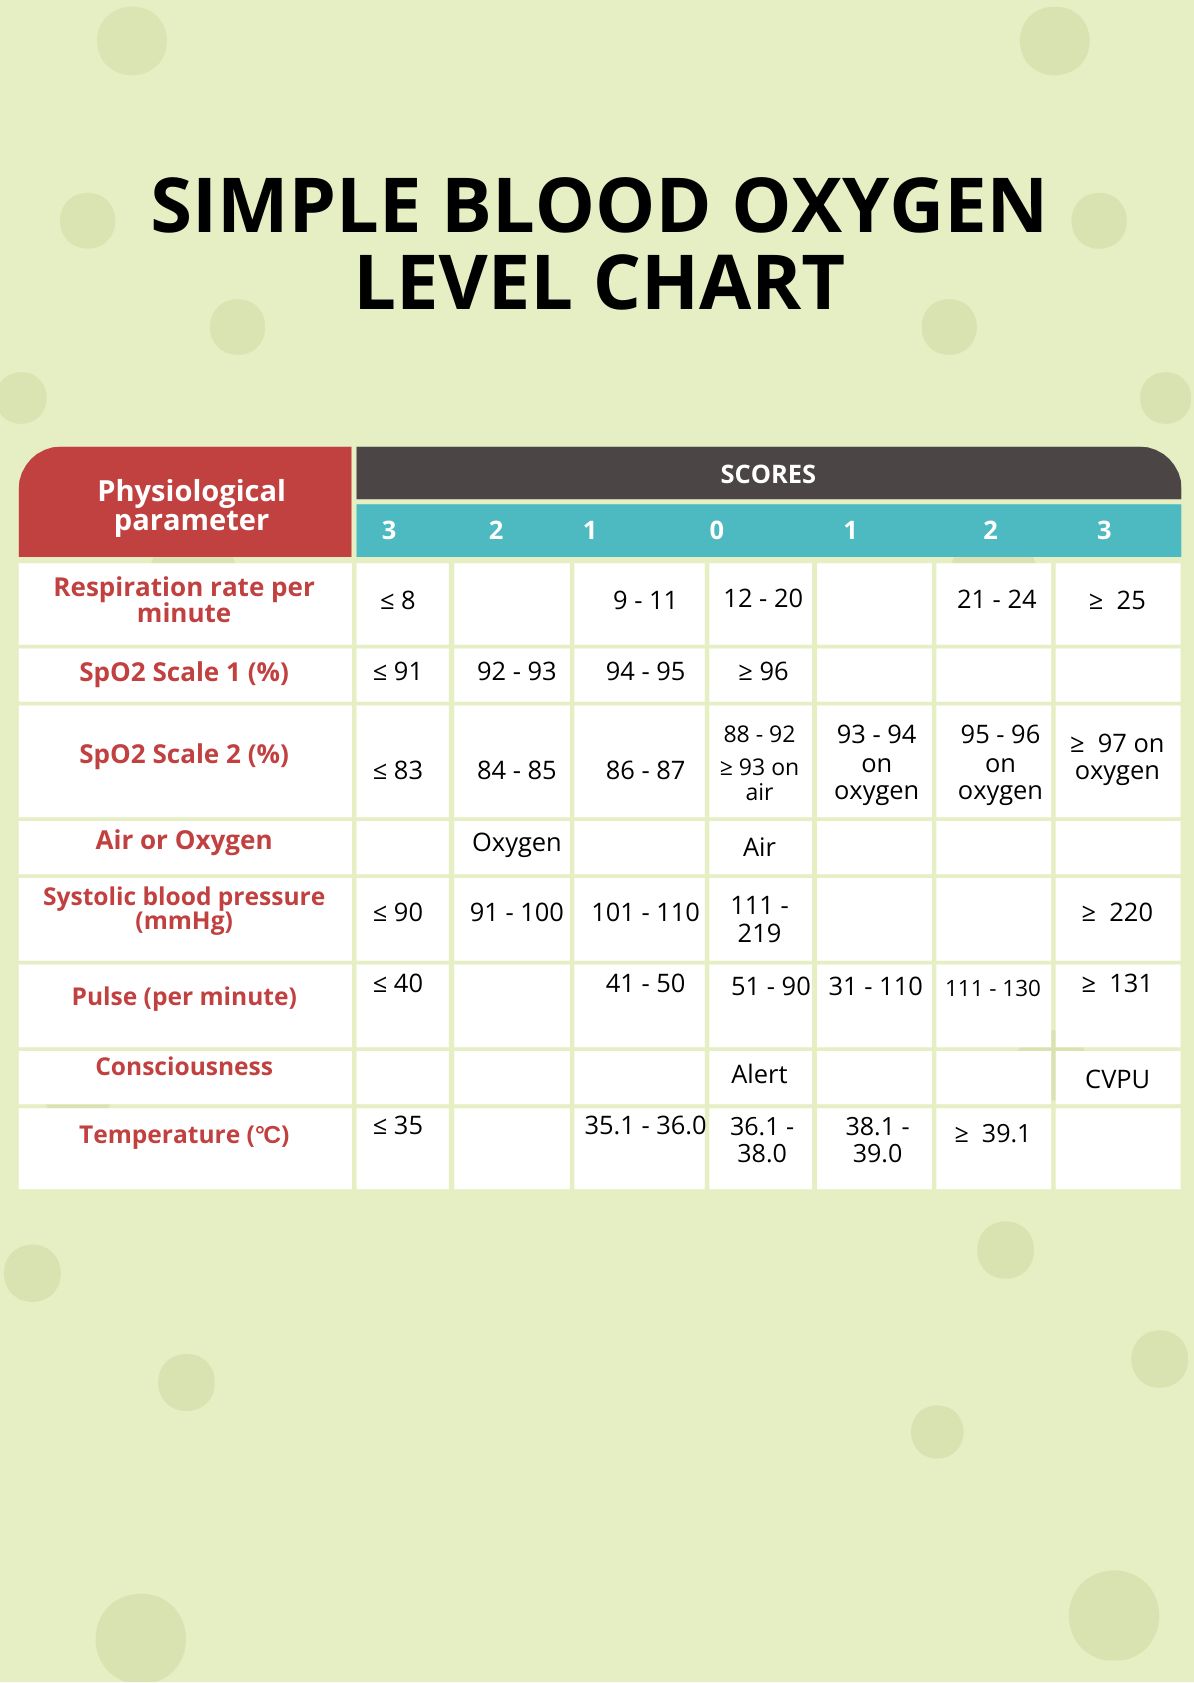 Levels Chart